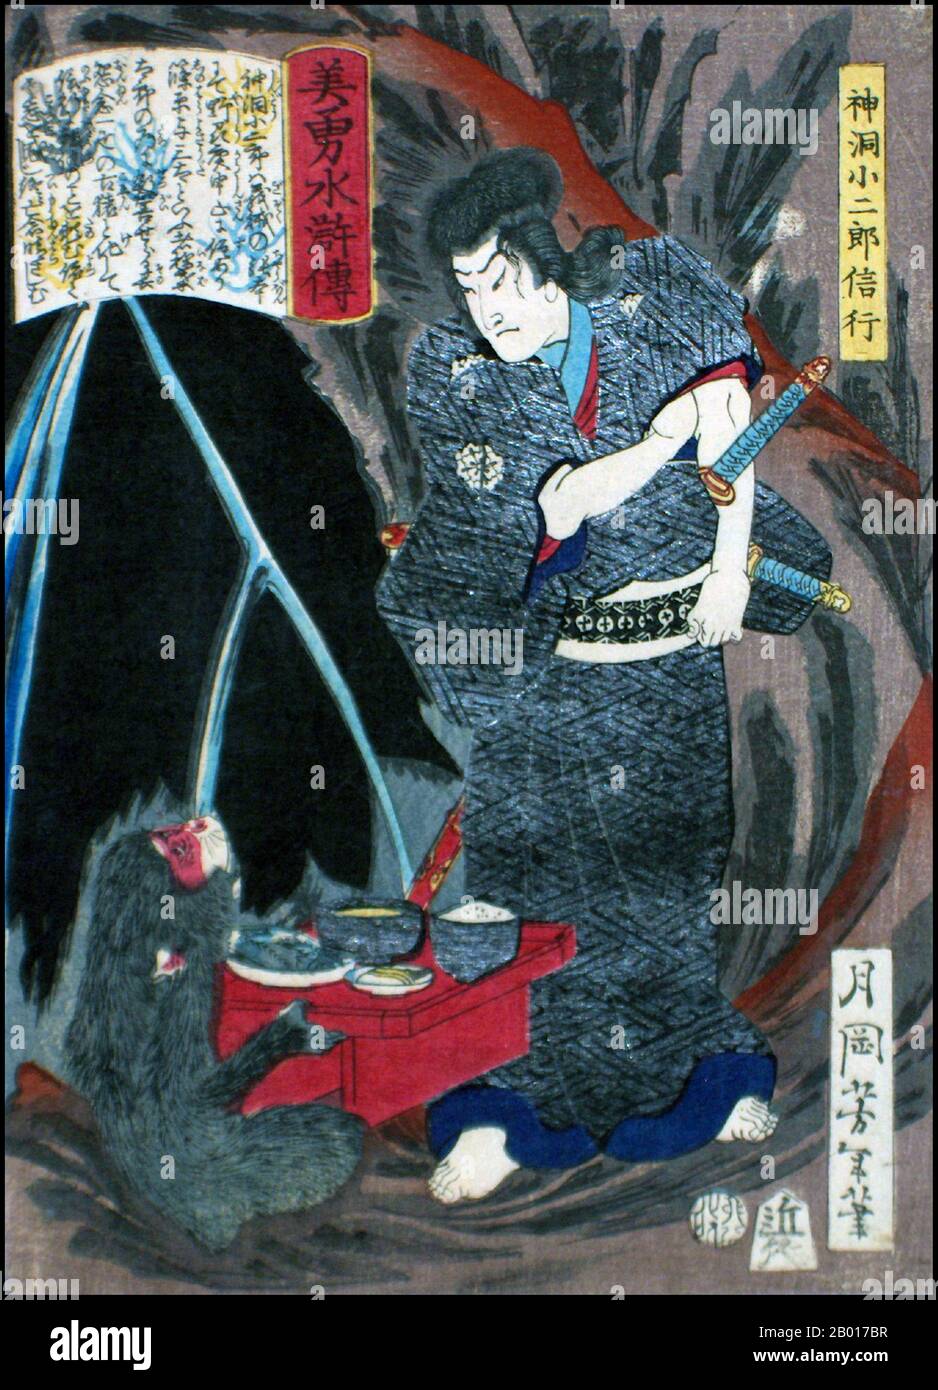 Giappone: 'Shindo Kojiro Nobuyuki conversare con lo Spirito scimmia di Shinohaza'. Ukiyo-e stampa di blocco di legno dalla serie 'Eroi del margine d'acqua' di Tsukioka Yoshitoshi (1839 - 9 giugno 1892), 1866. Tsukioka Yoshitoshi, anche chiamato Taiso Yoshitoshi, era un artista giapponese. È ampiamente riconosciuto come l'ultimo grande maestro di Ukiyo-e, un tipo di stampa giapponese a blocchi di legno. È inoltre considerato uno dei più grandi innovatori della forma. La sua carriera ha abbracciato due epoche – gli ultimi anni del Giappone feudale, e i primi anni del Giappone moderno dopo la Restaurazione Meiji. Foto Stock